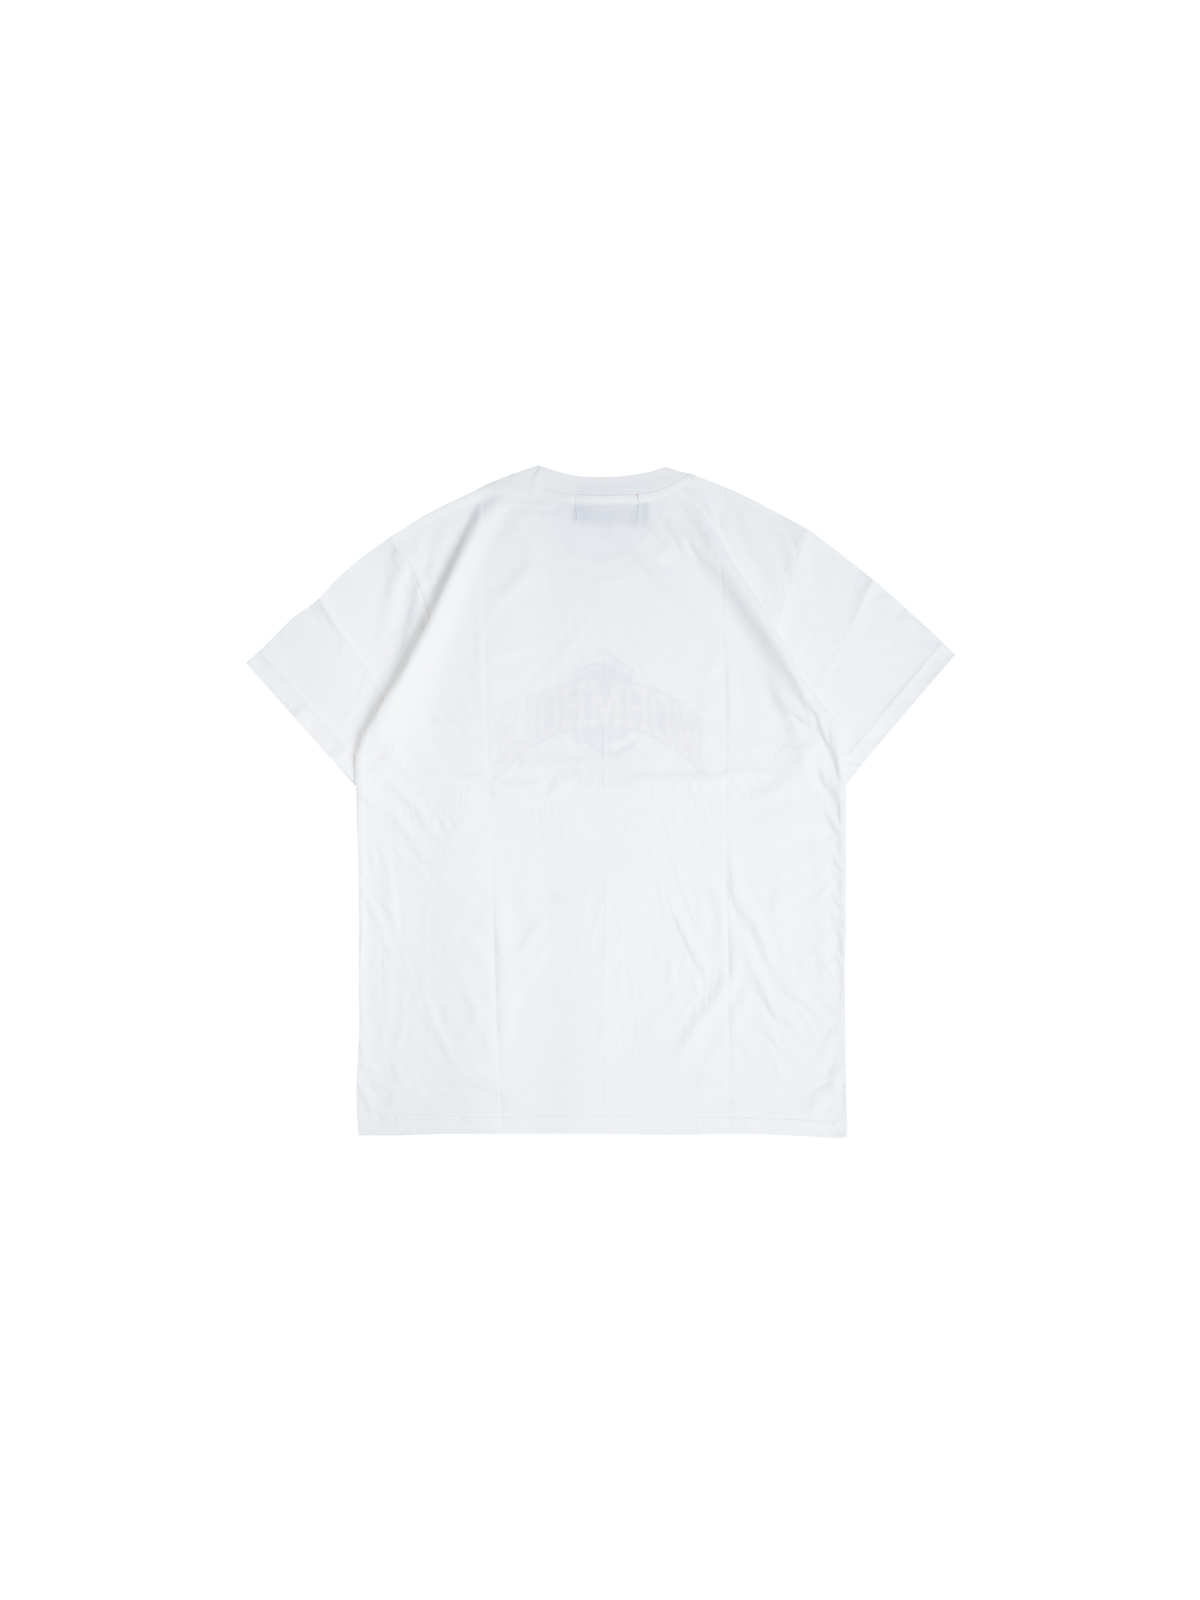 Wormhole x TokoMall by TokoCrypto W-UNIT T-shirt White – WORMHOLE STORE